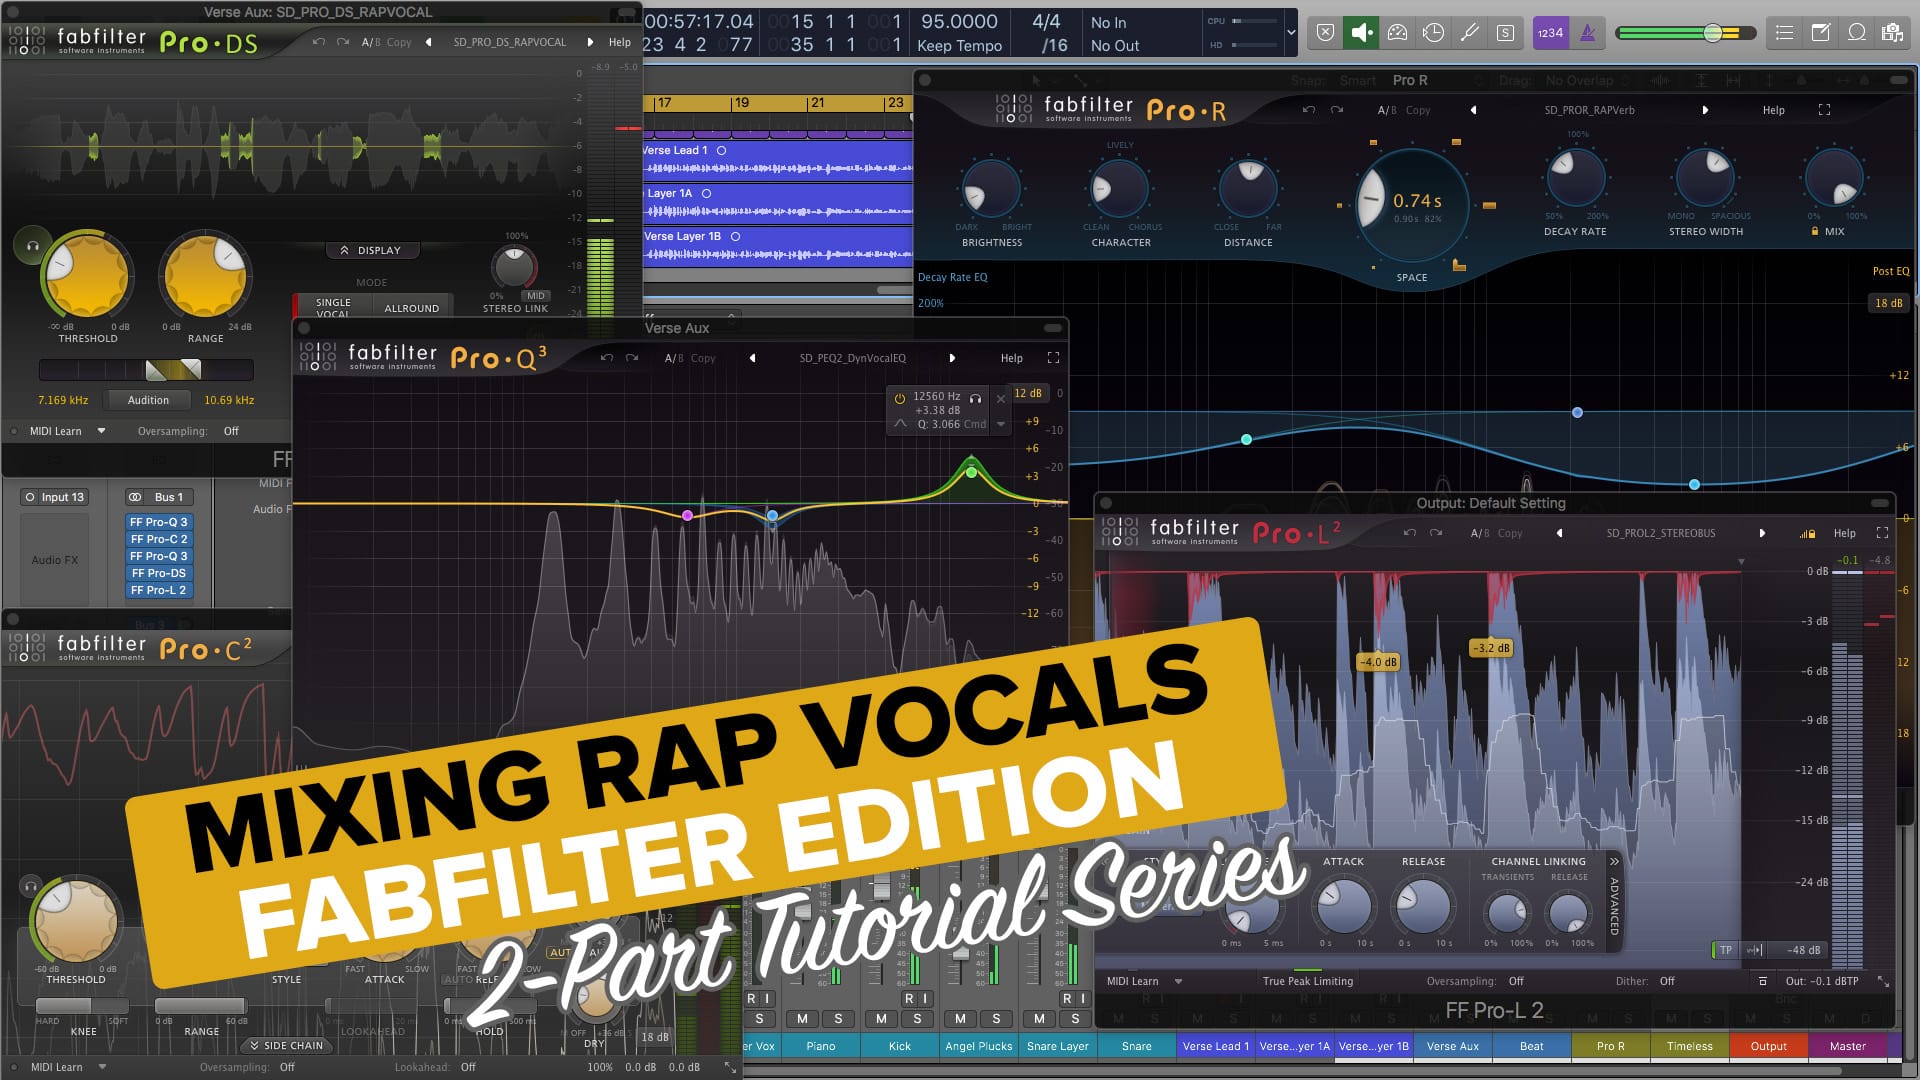 fl studio vocal mixing presets free download